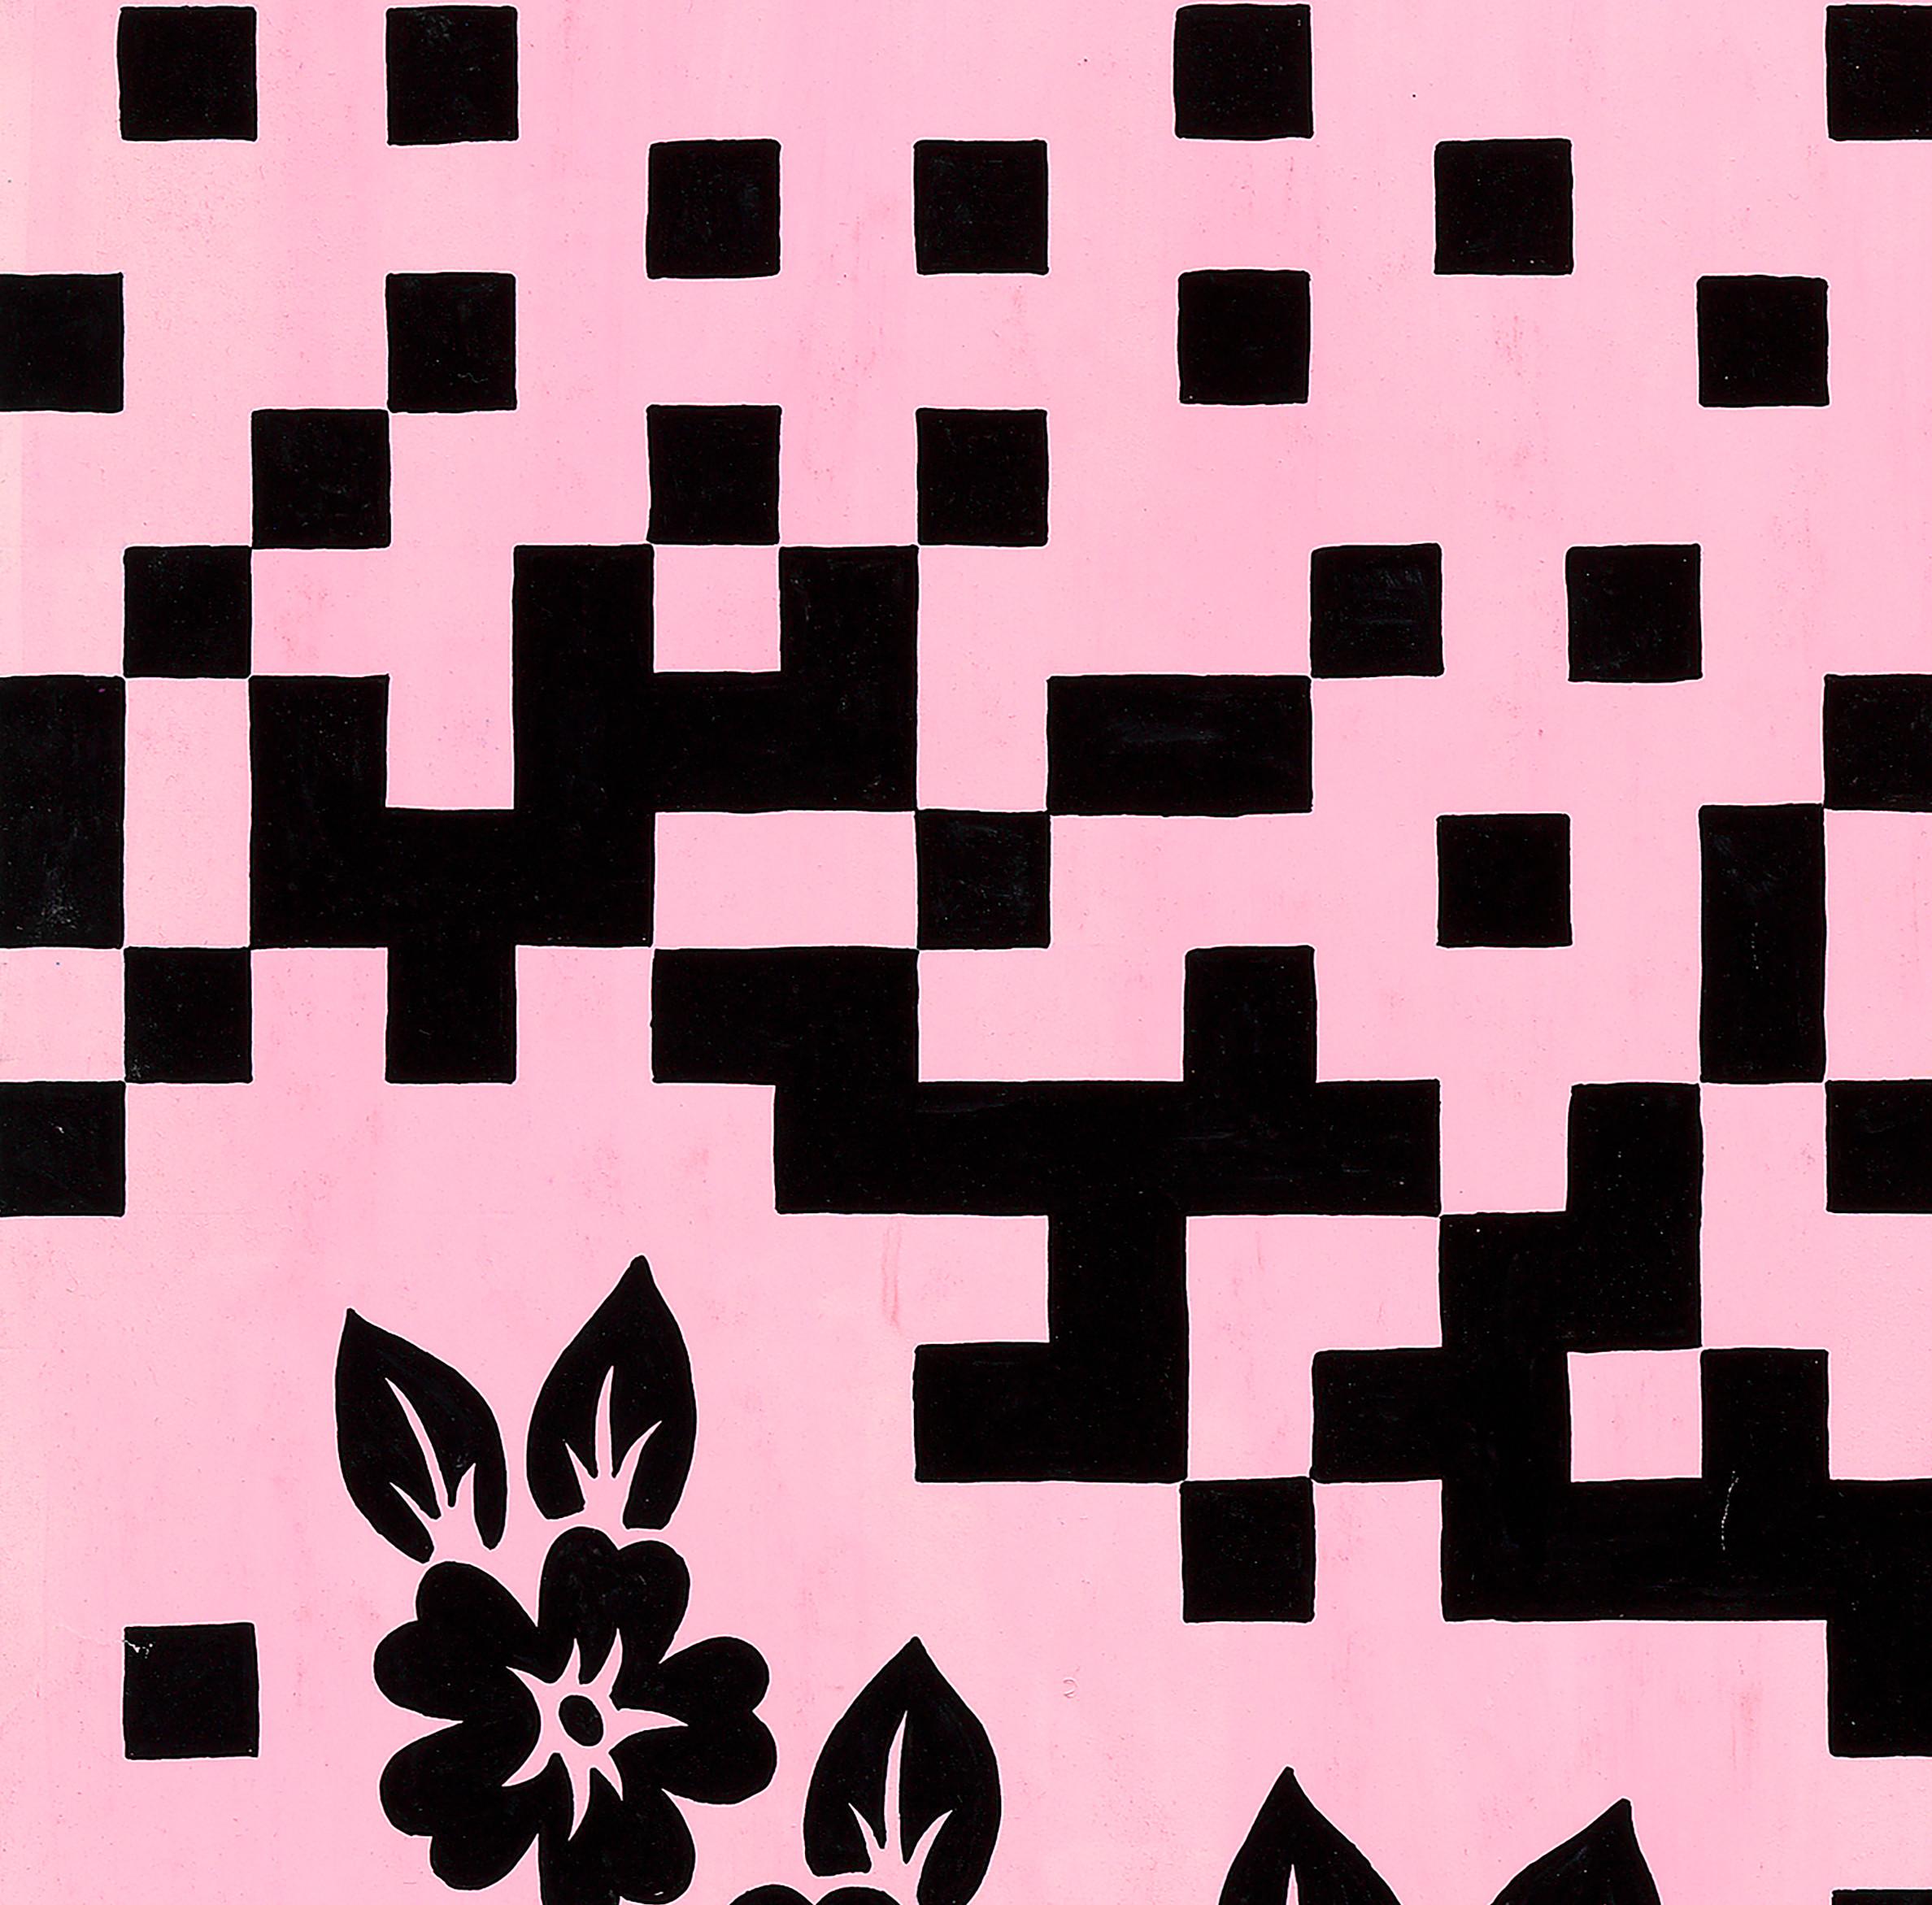 Conception textile originale des années 70 peinte à la main à la gouache, couleur rose et noire sur papier - Moderne Art par Unknown